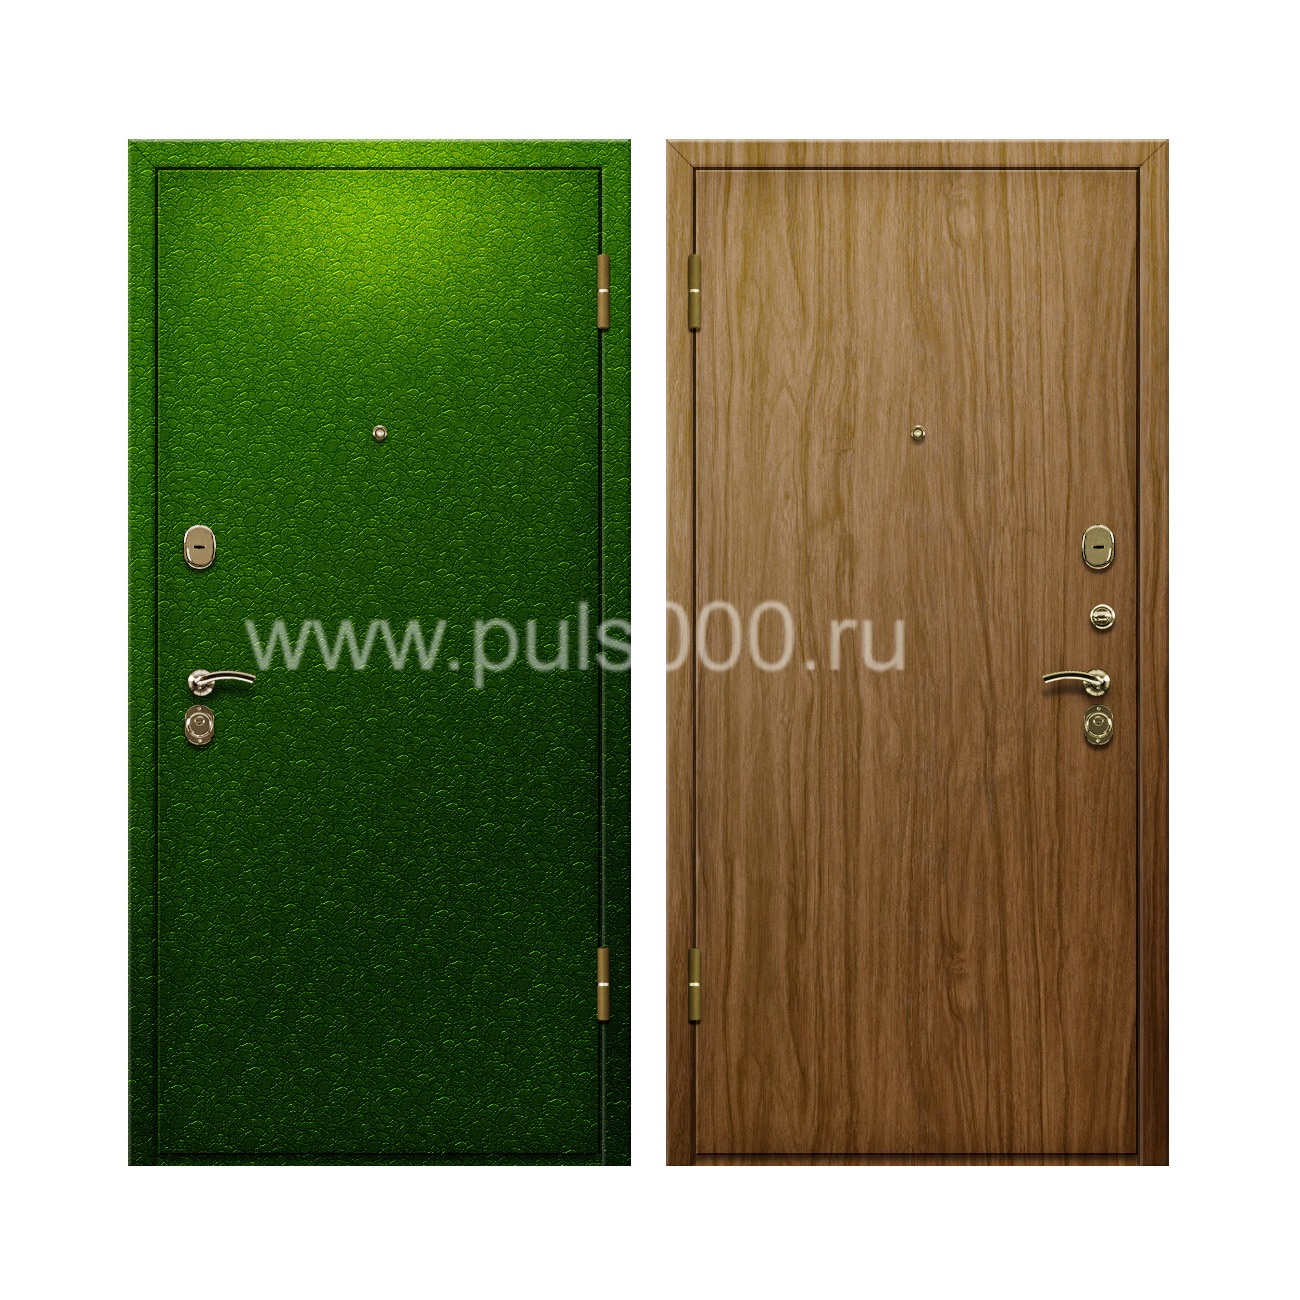 Входная дверь порошковый окрас + ламинат внутри PR-68, цена 20 000  руб.